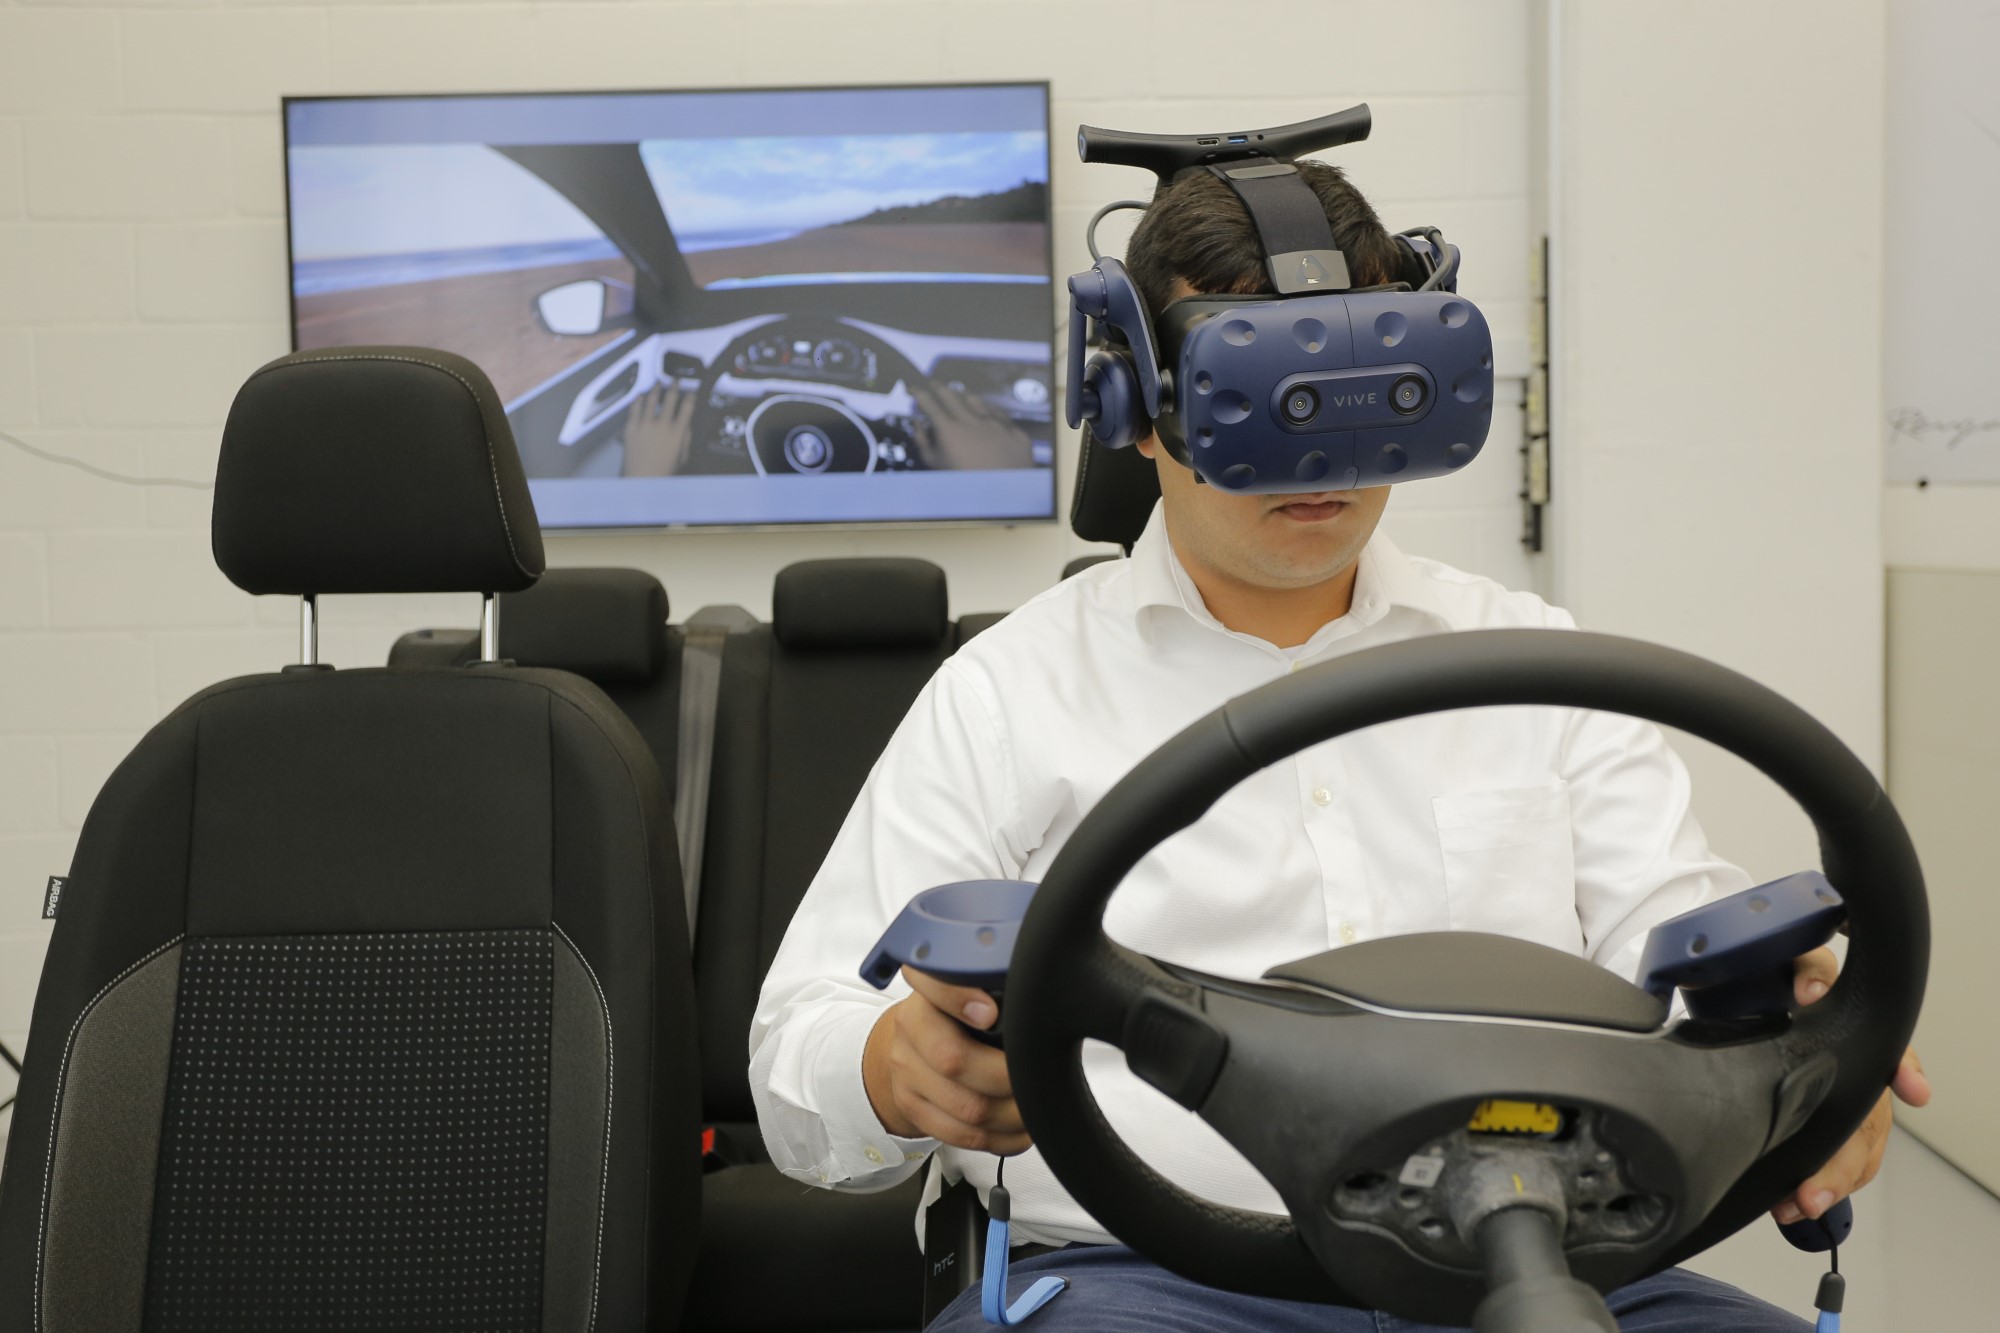 Realidade virtual, o novo recurso de venda das montadoras